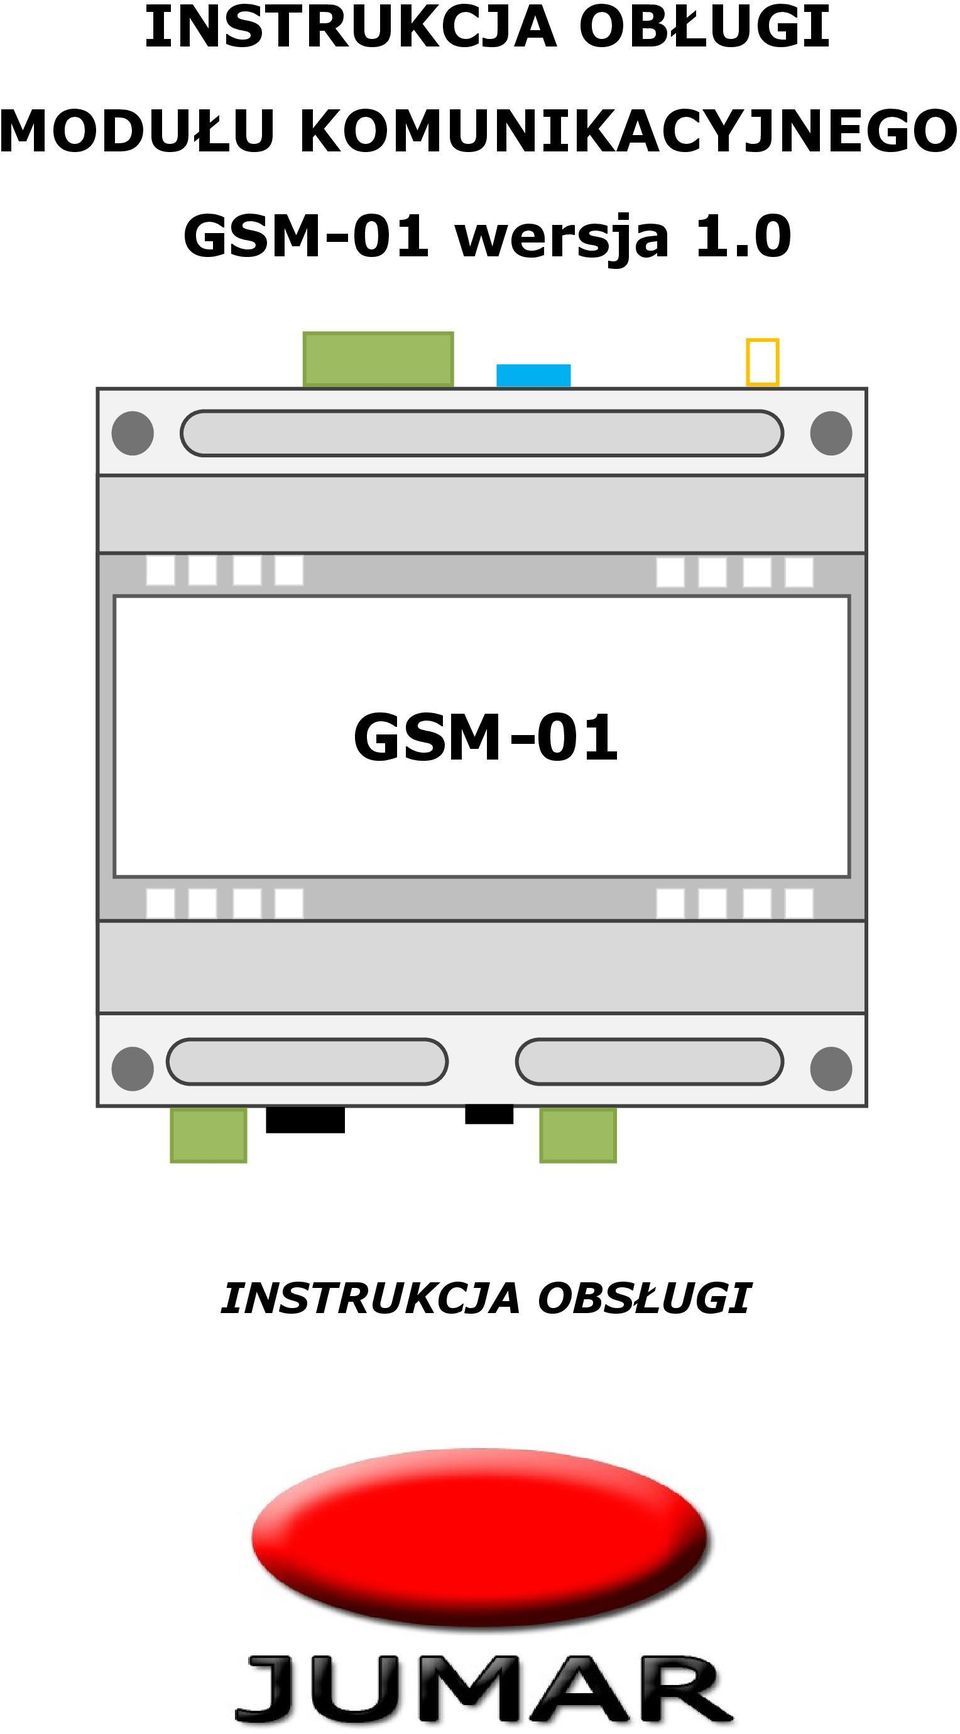 GSM-01 wersja 1.